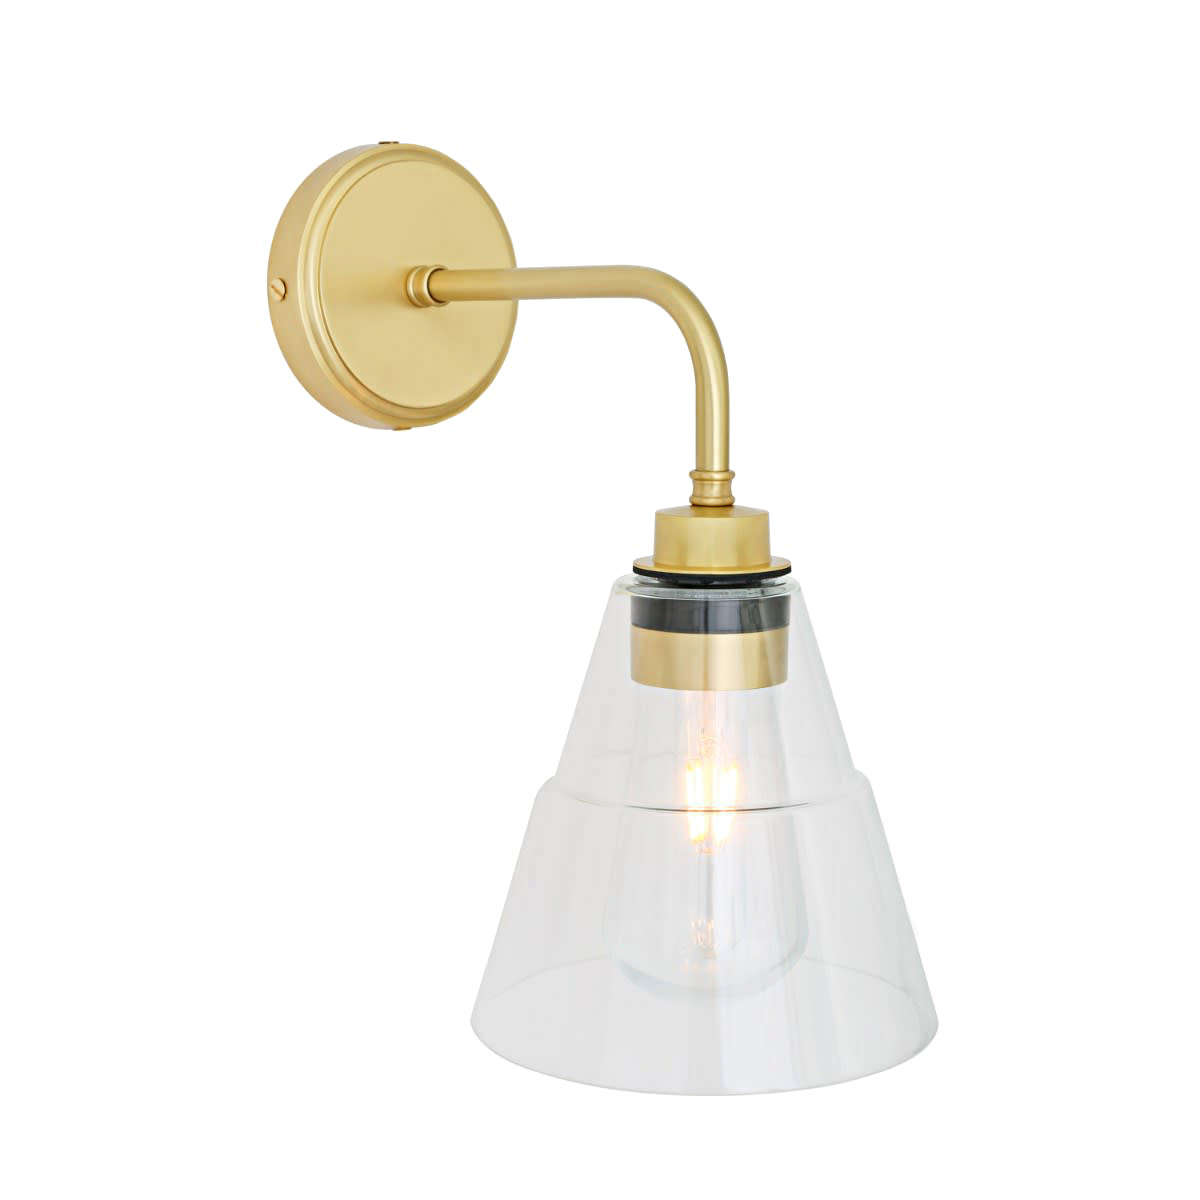 Wasserdichte Wandlampe mit Kegel-Glasschirm, IP65: Wandlampe mit abgestuftem Kegel-Glasschirm, IP65; Messing satiniert